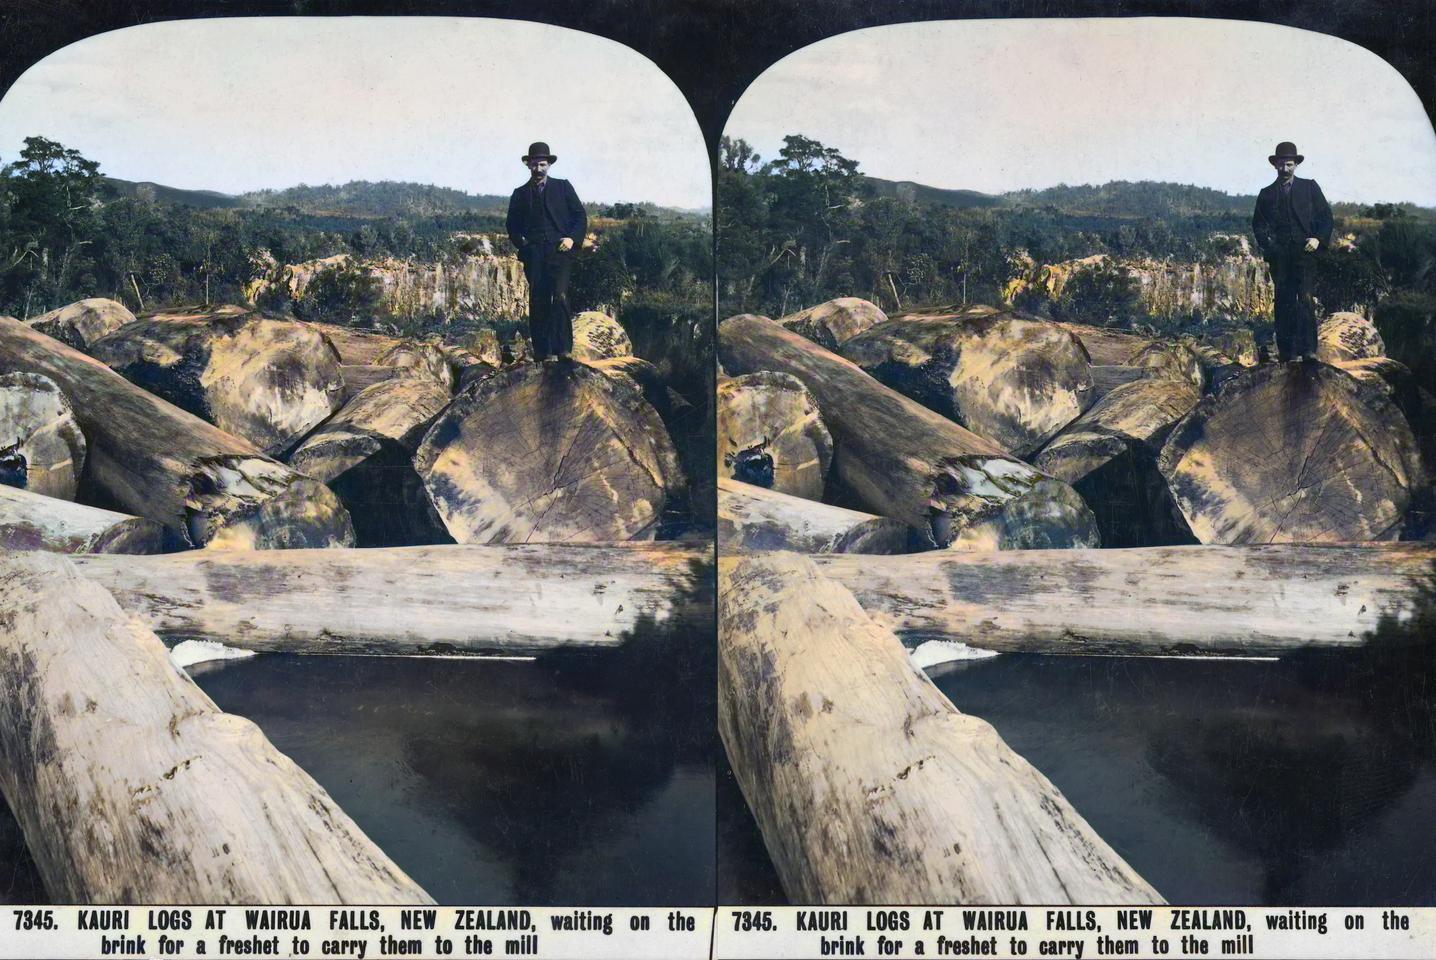 Kauri logs at Wairua Falls (near Whangarei), circa 1900